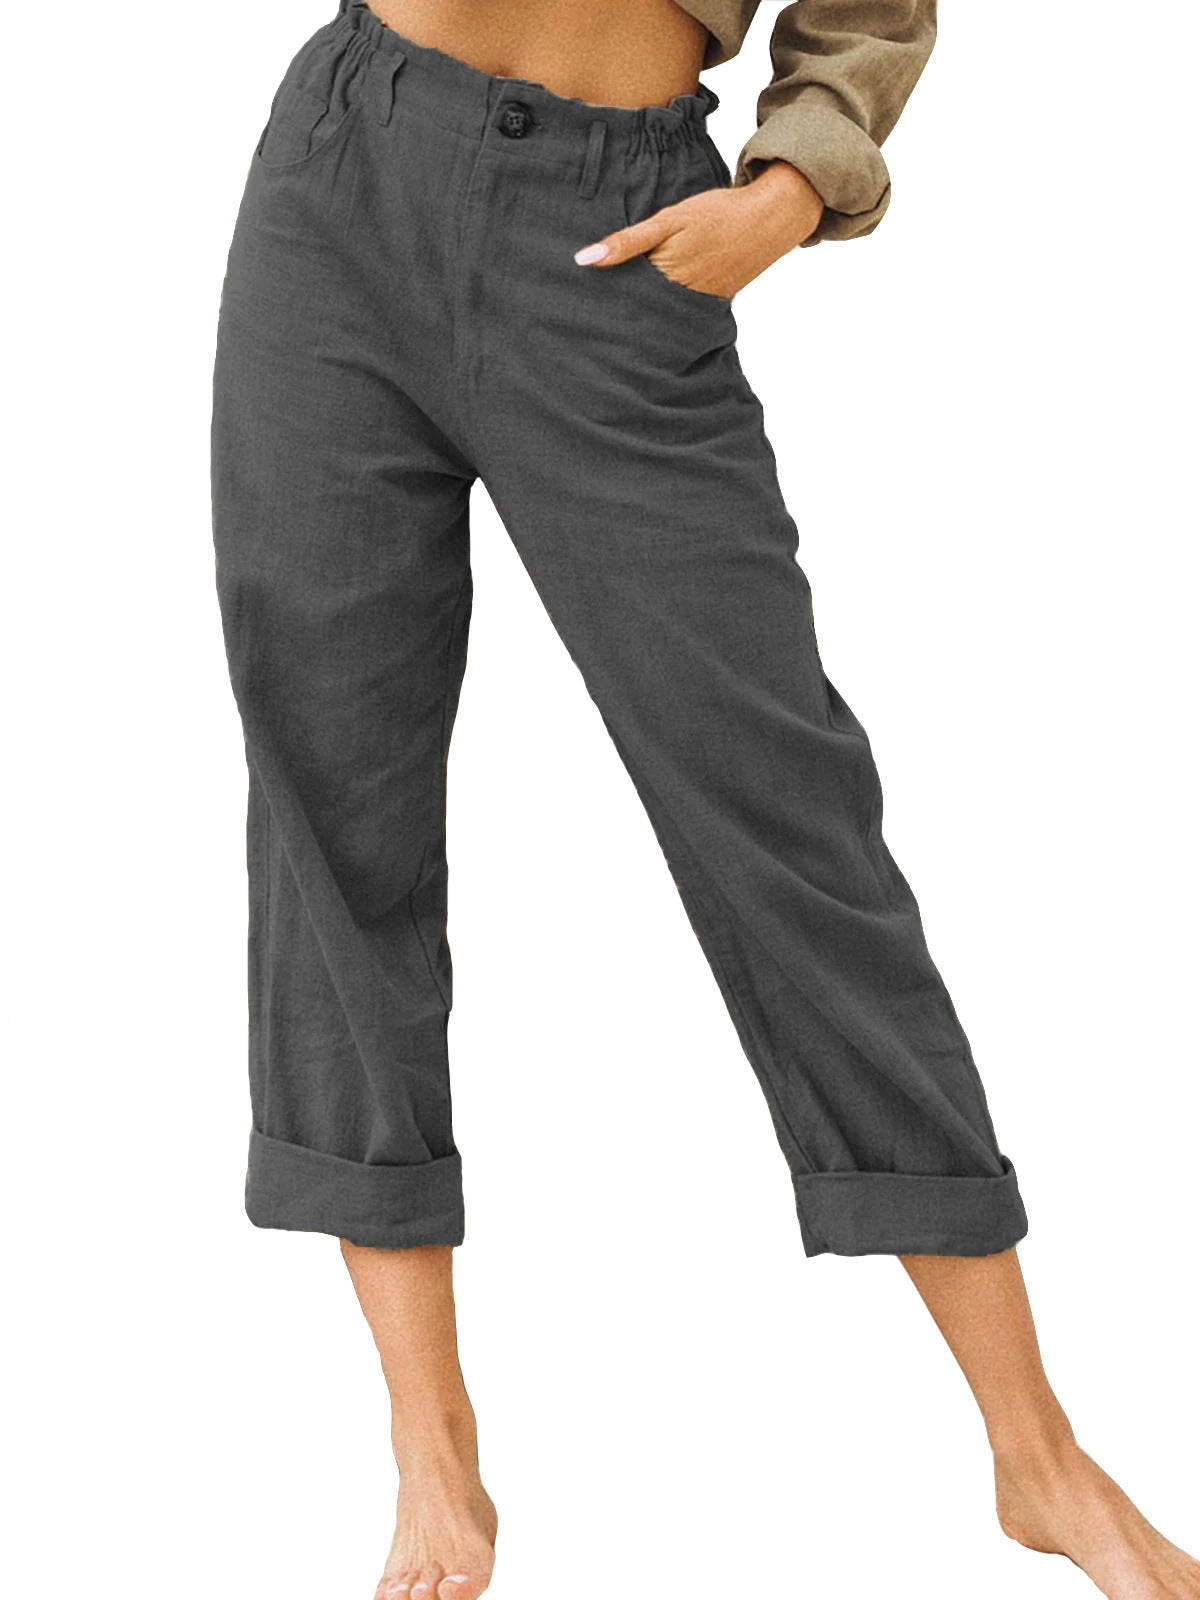 Patchwork Pant Women's Cotton Linen Pants Drawstring Back Elastic Waist Pants Loose Casual Trousers